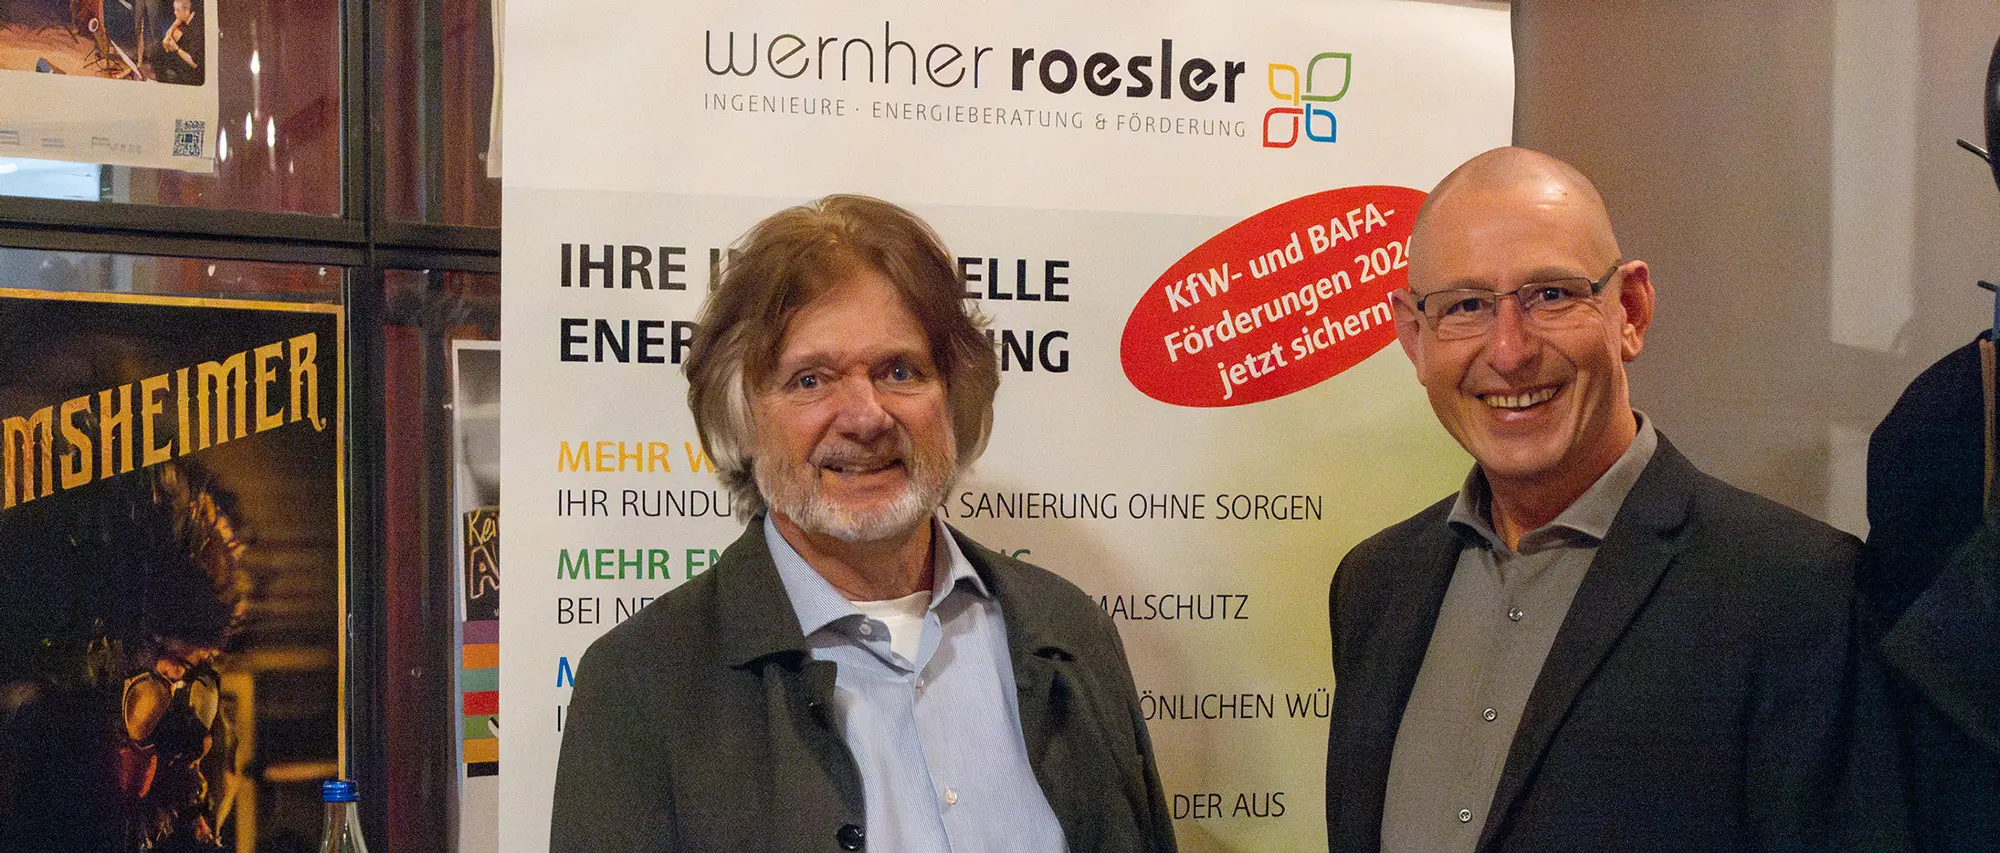 Wernher Rösler Ingenieure – Klimawandel und mehr - anschaulich und faszinierend präsentiert von Arved Fuchs Expeditionen in seinem Multimedia-Vortrag in der Rätsche in Geislingen.